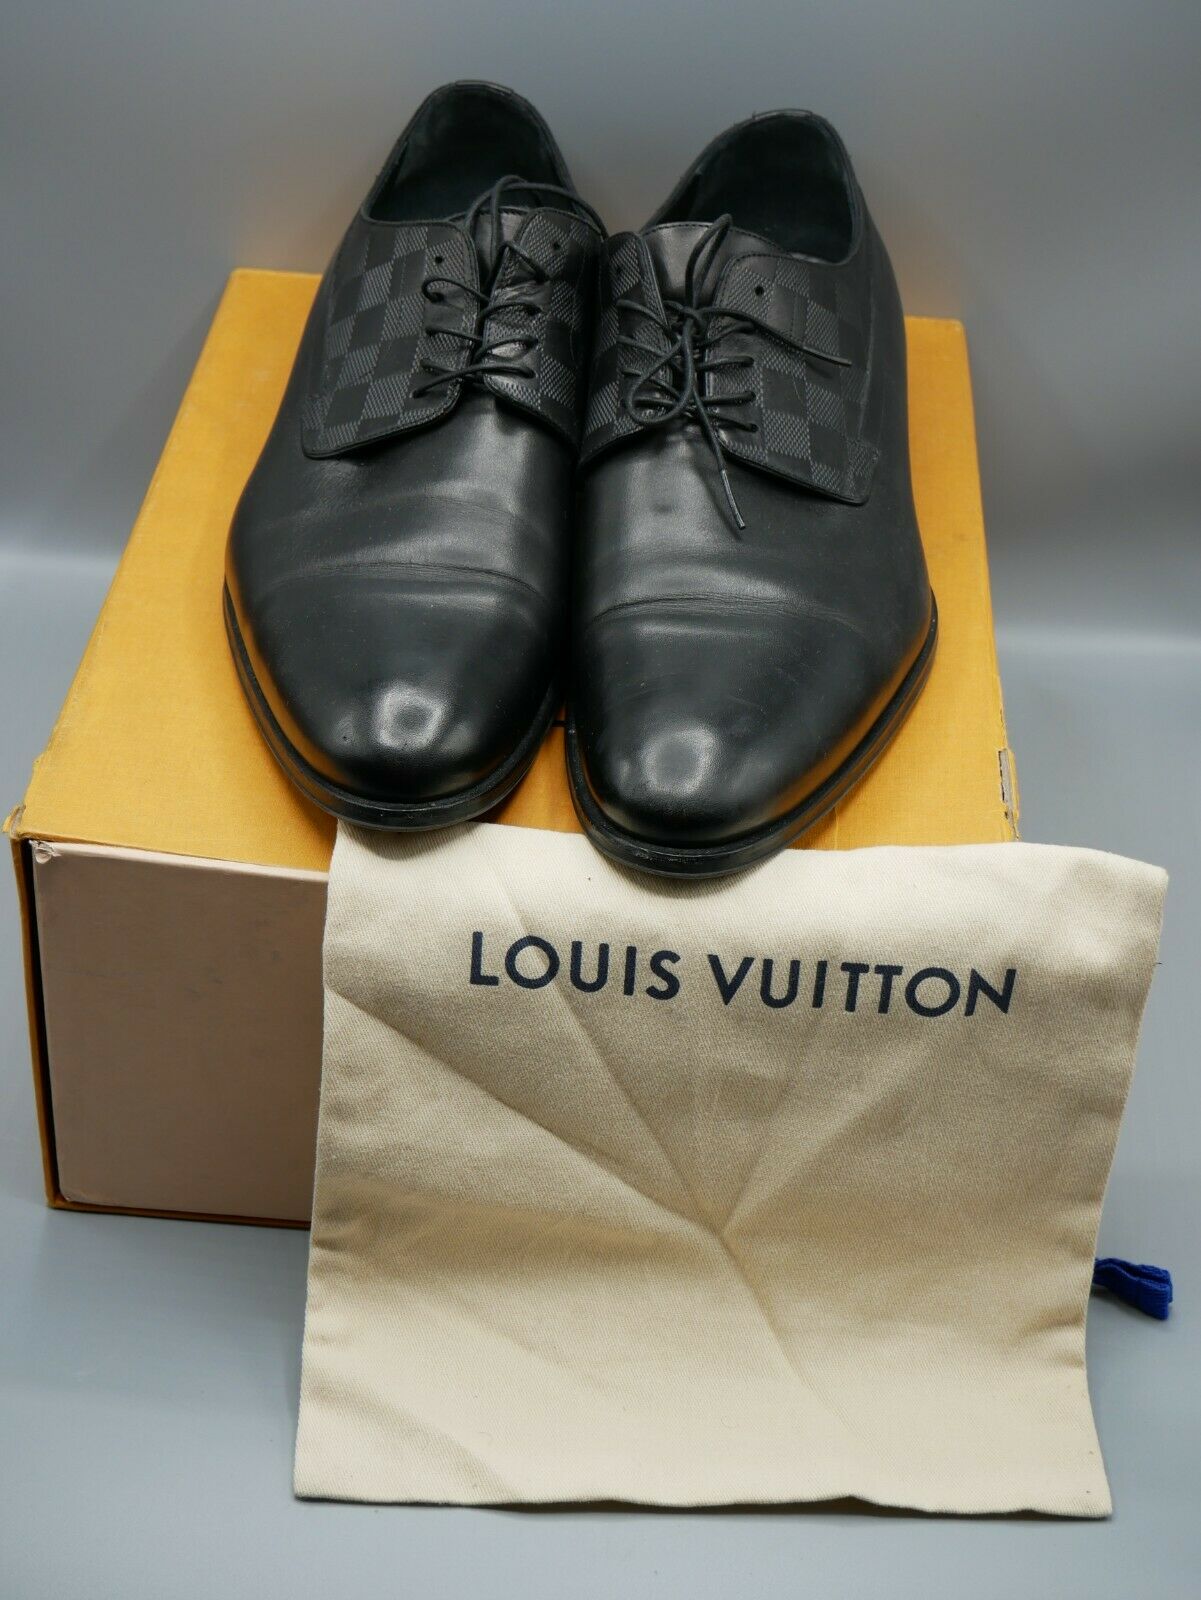 Louis Vuitton Black Leather Lace Up Oxford Size 43 Louis Vuitton